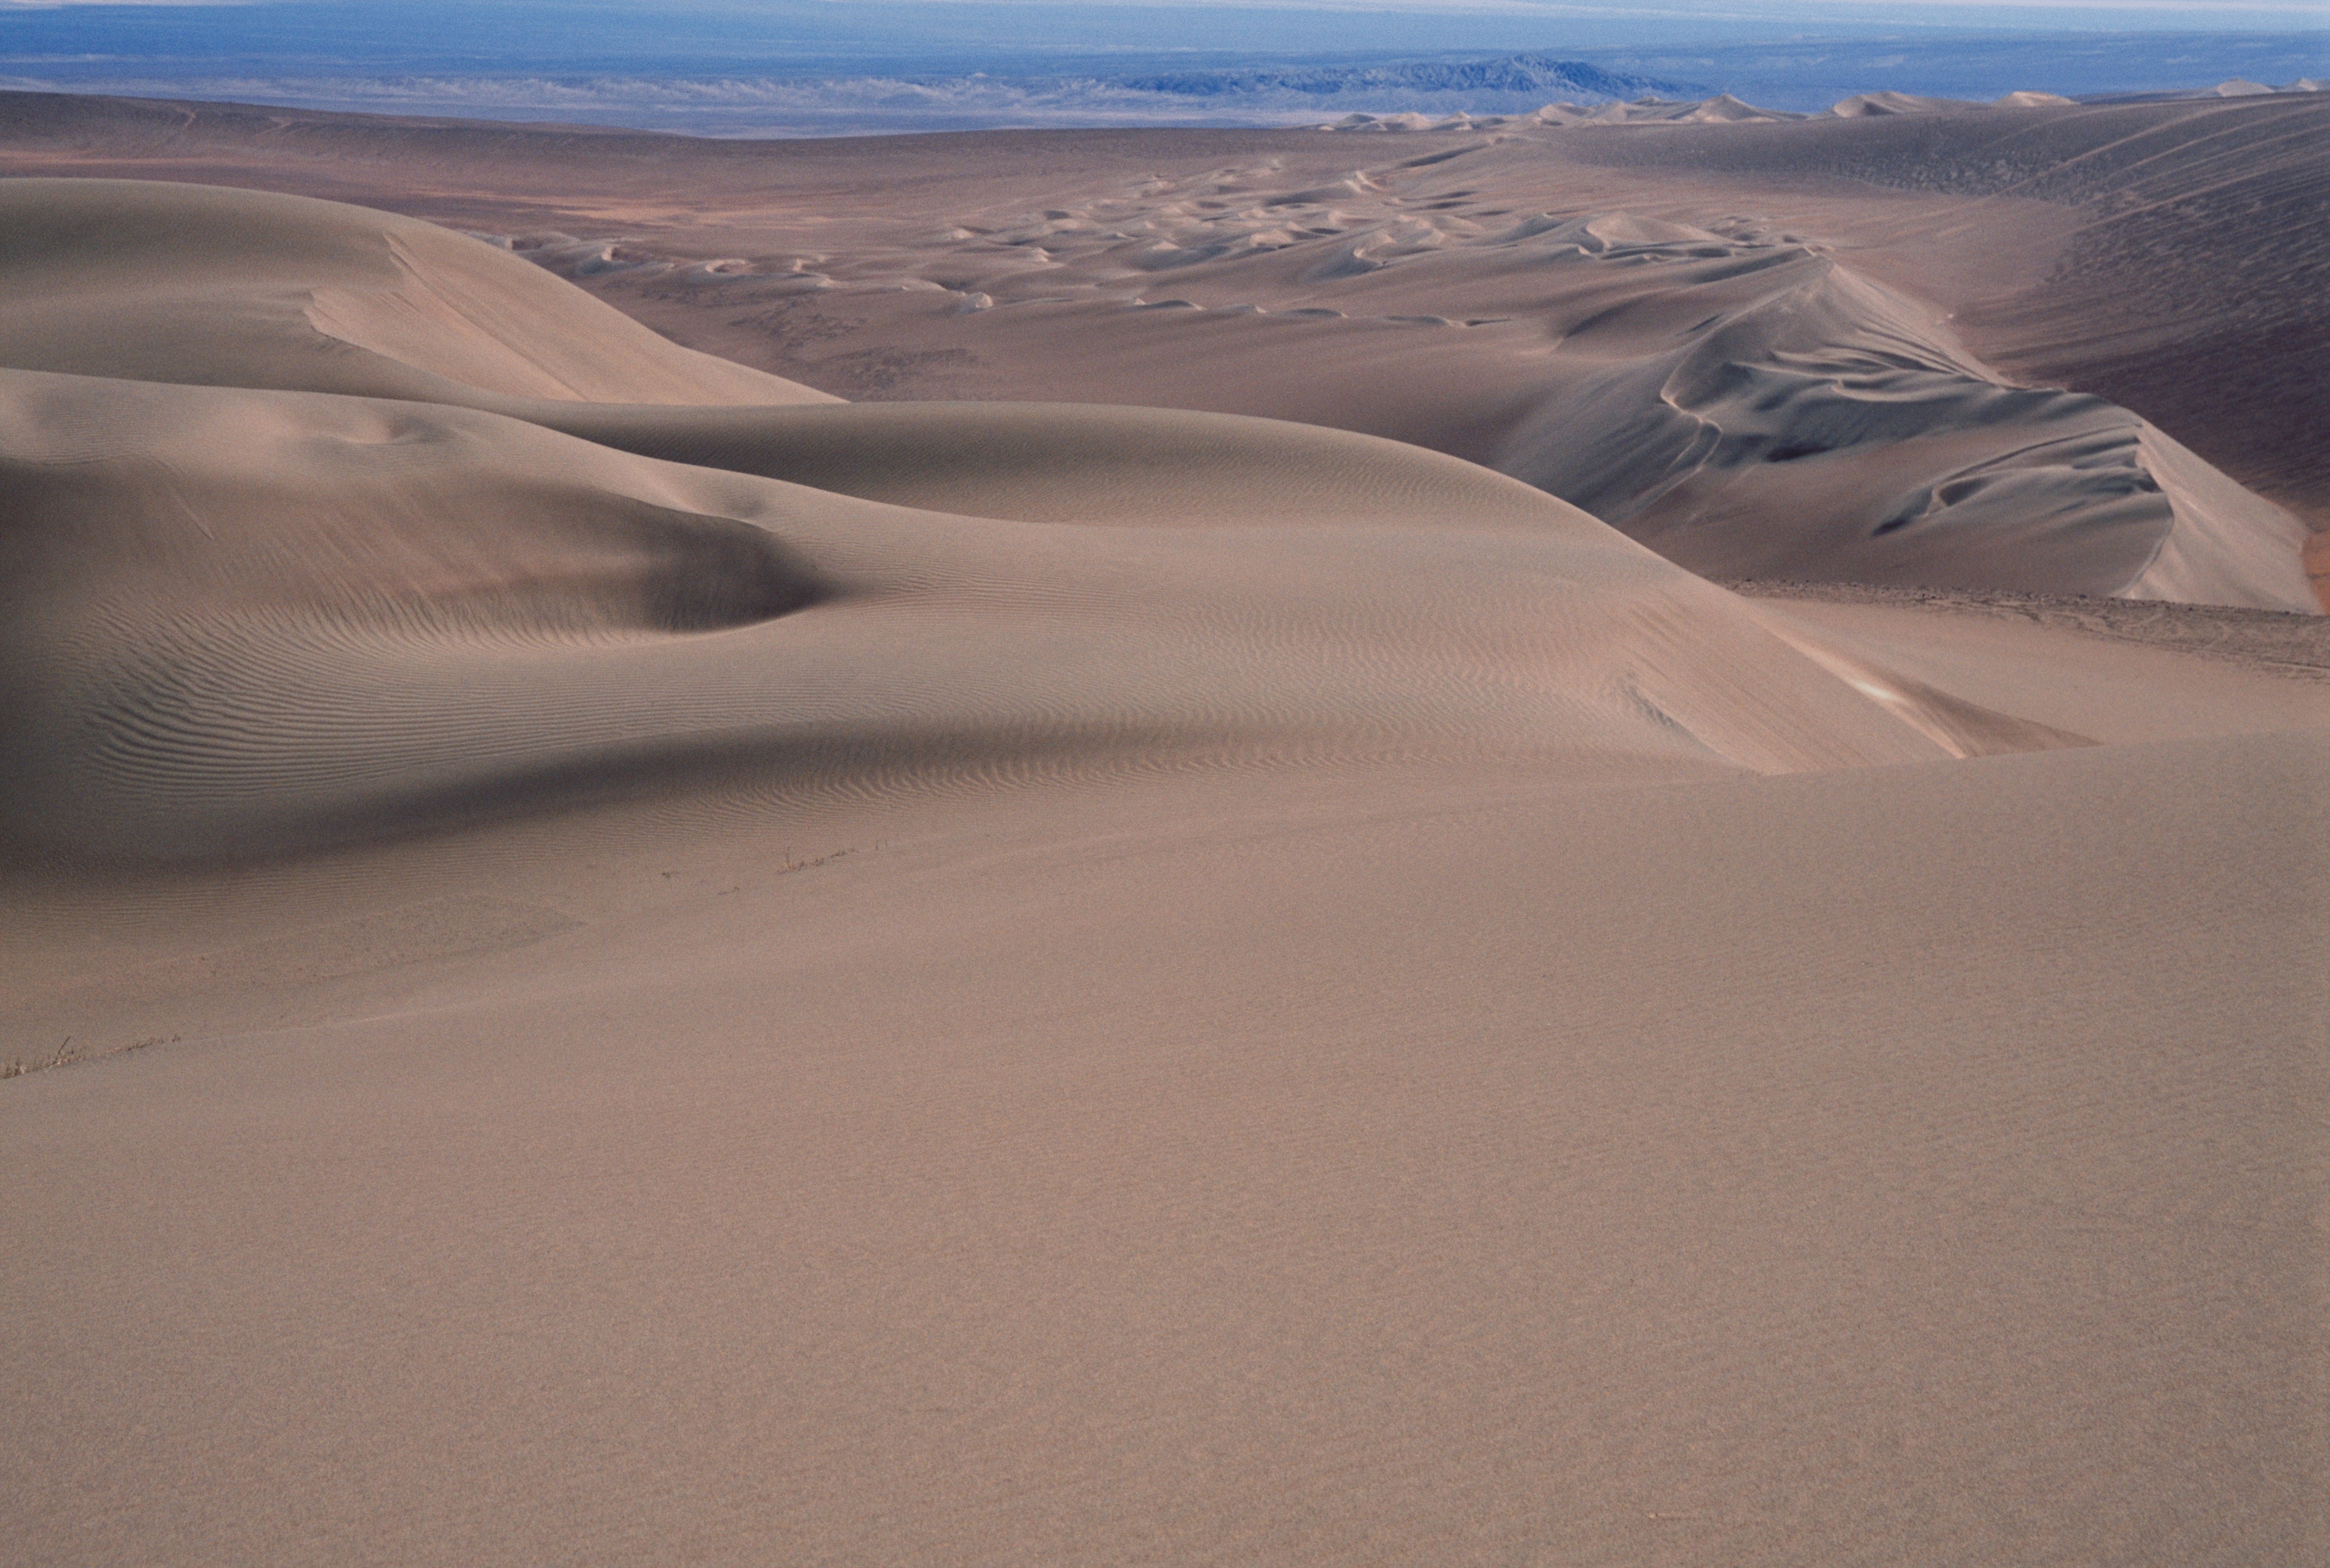 The Atacama desert near Pica, Salar de Huasco National Park, Chile. (DEA / V. GIANNELLA; De Agostini via Getty Images)